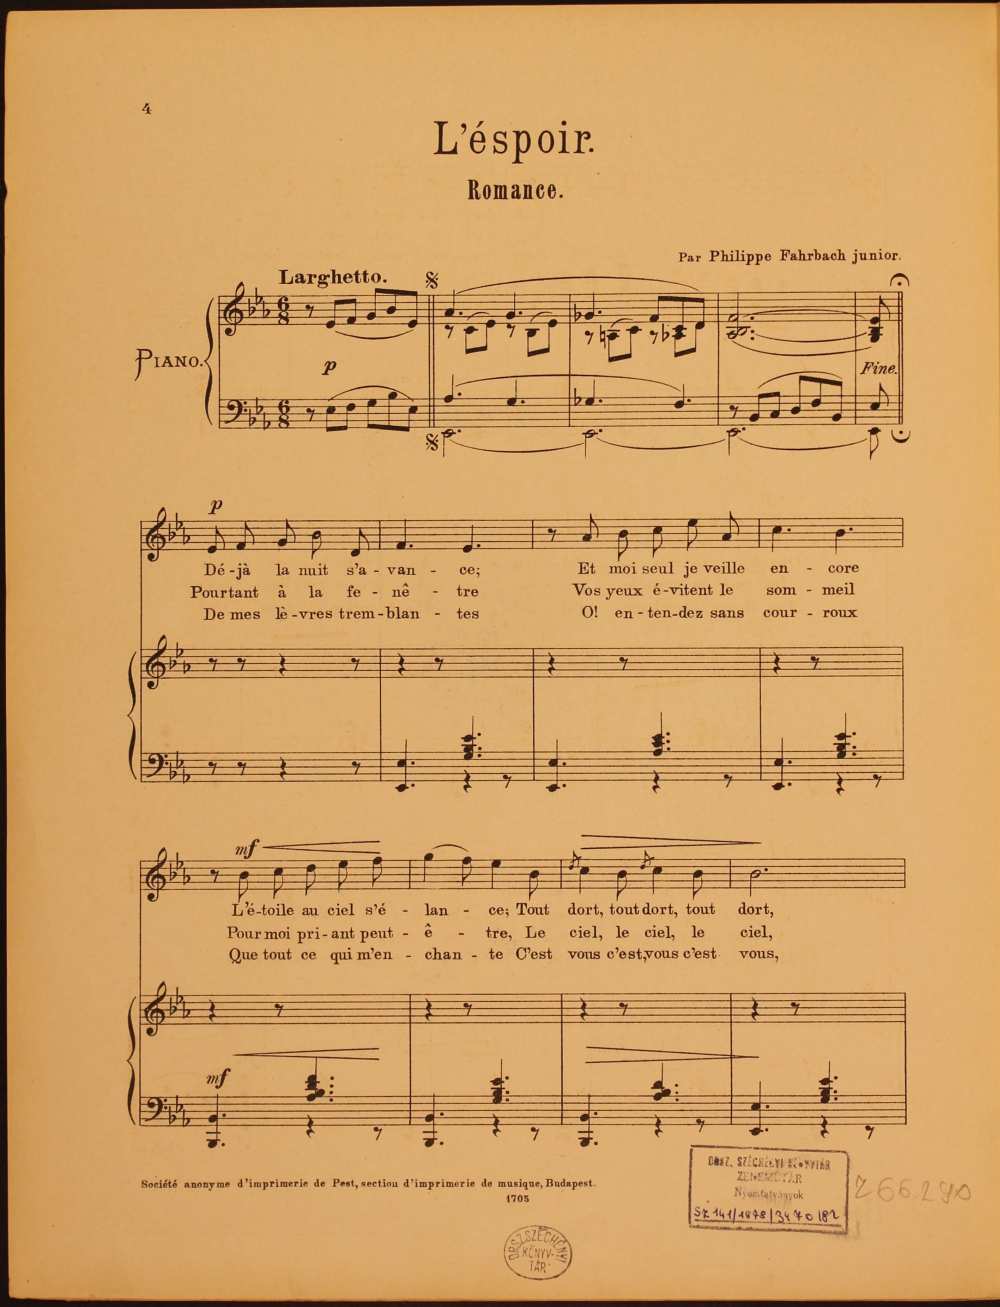 Philippe Farbach: L’éspoir. Romance. [Dal, ének-zongora. Szövege: Sideon Isoz-tól], Budapest, 1898. – Zeneműtár, Z. 66.290